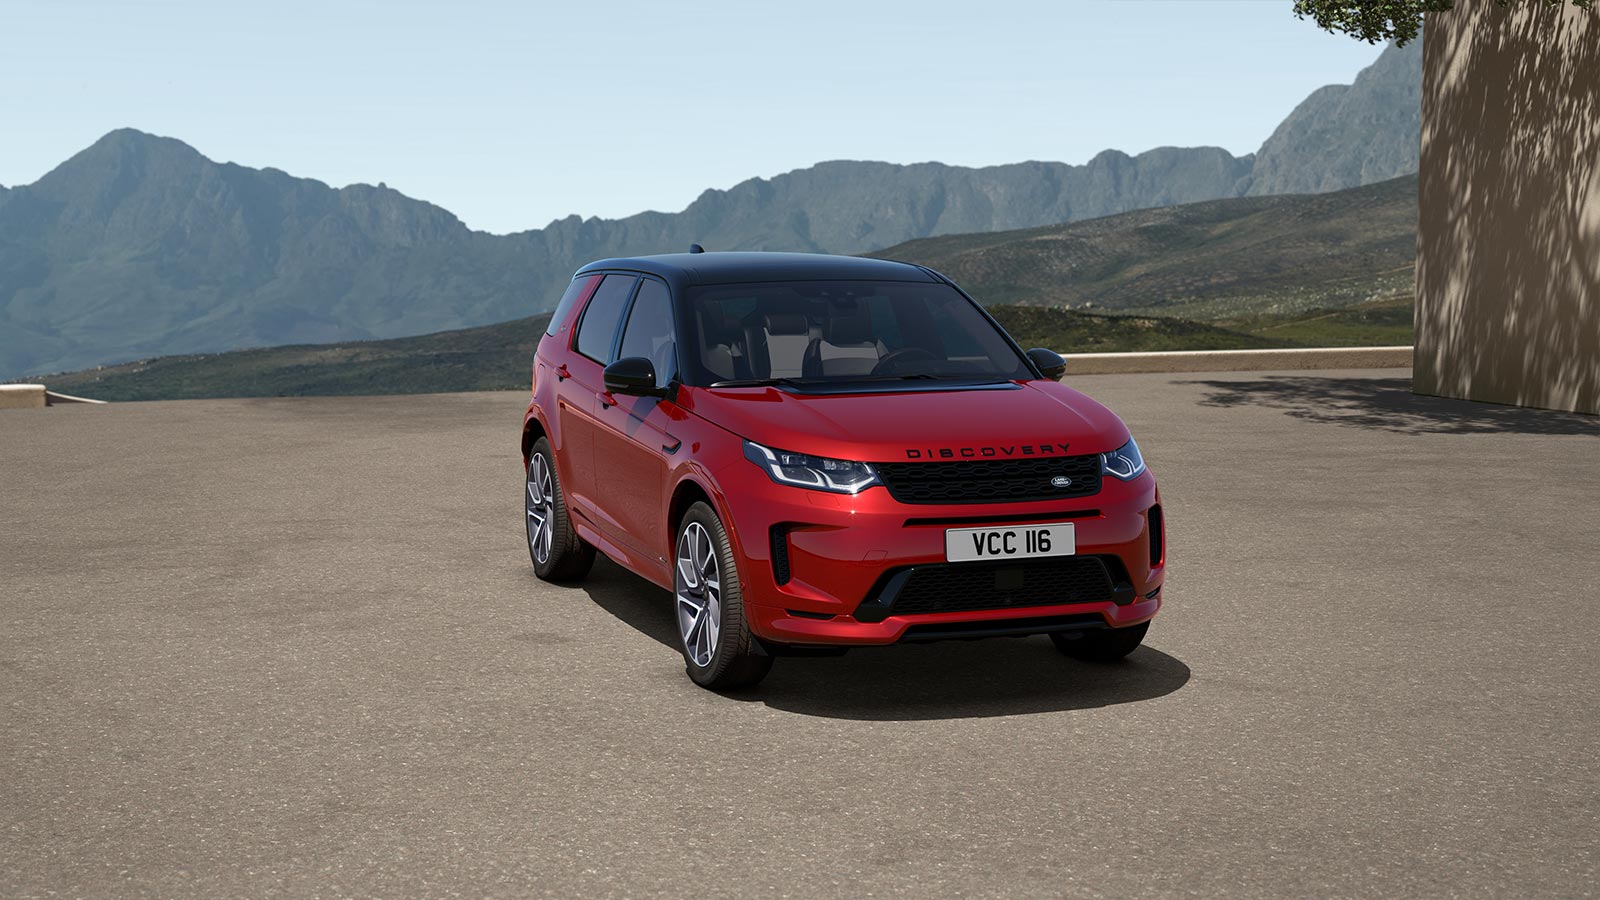 Harga Land Rover Discovery Sport Terbaru, Spesifikasi dan Interior 2022!